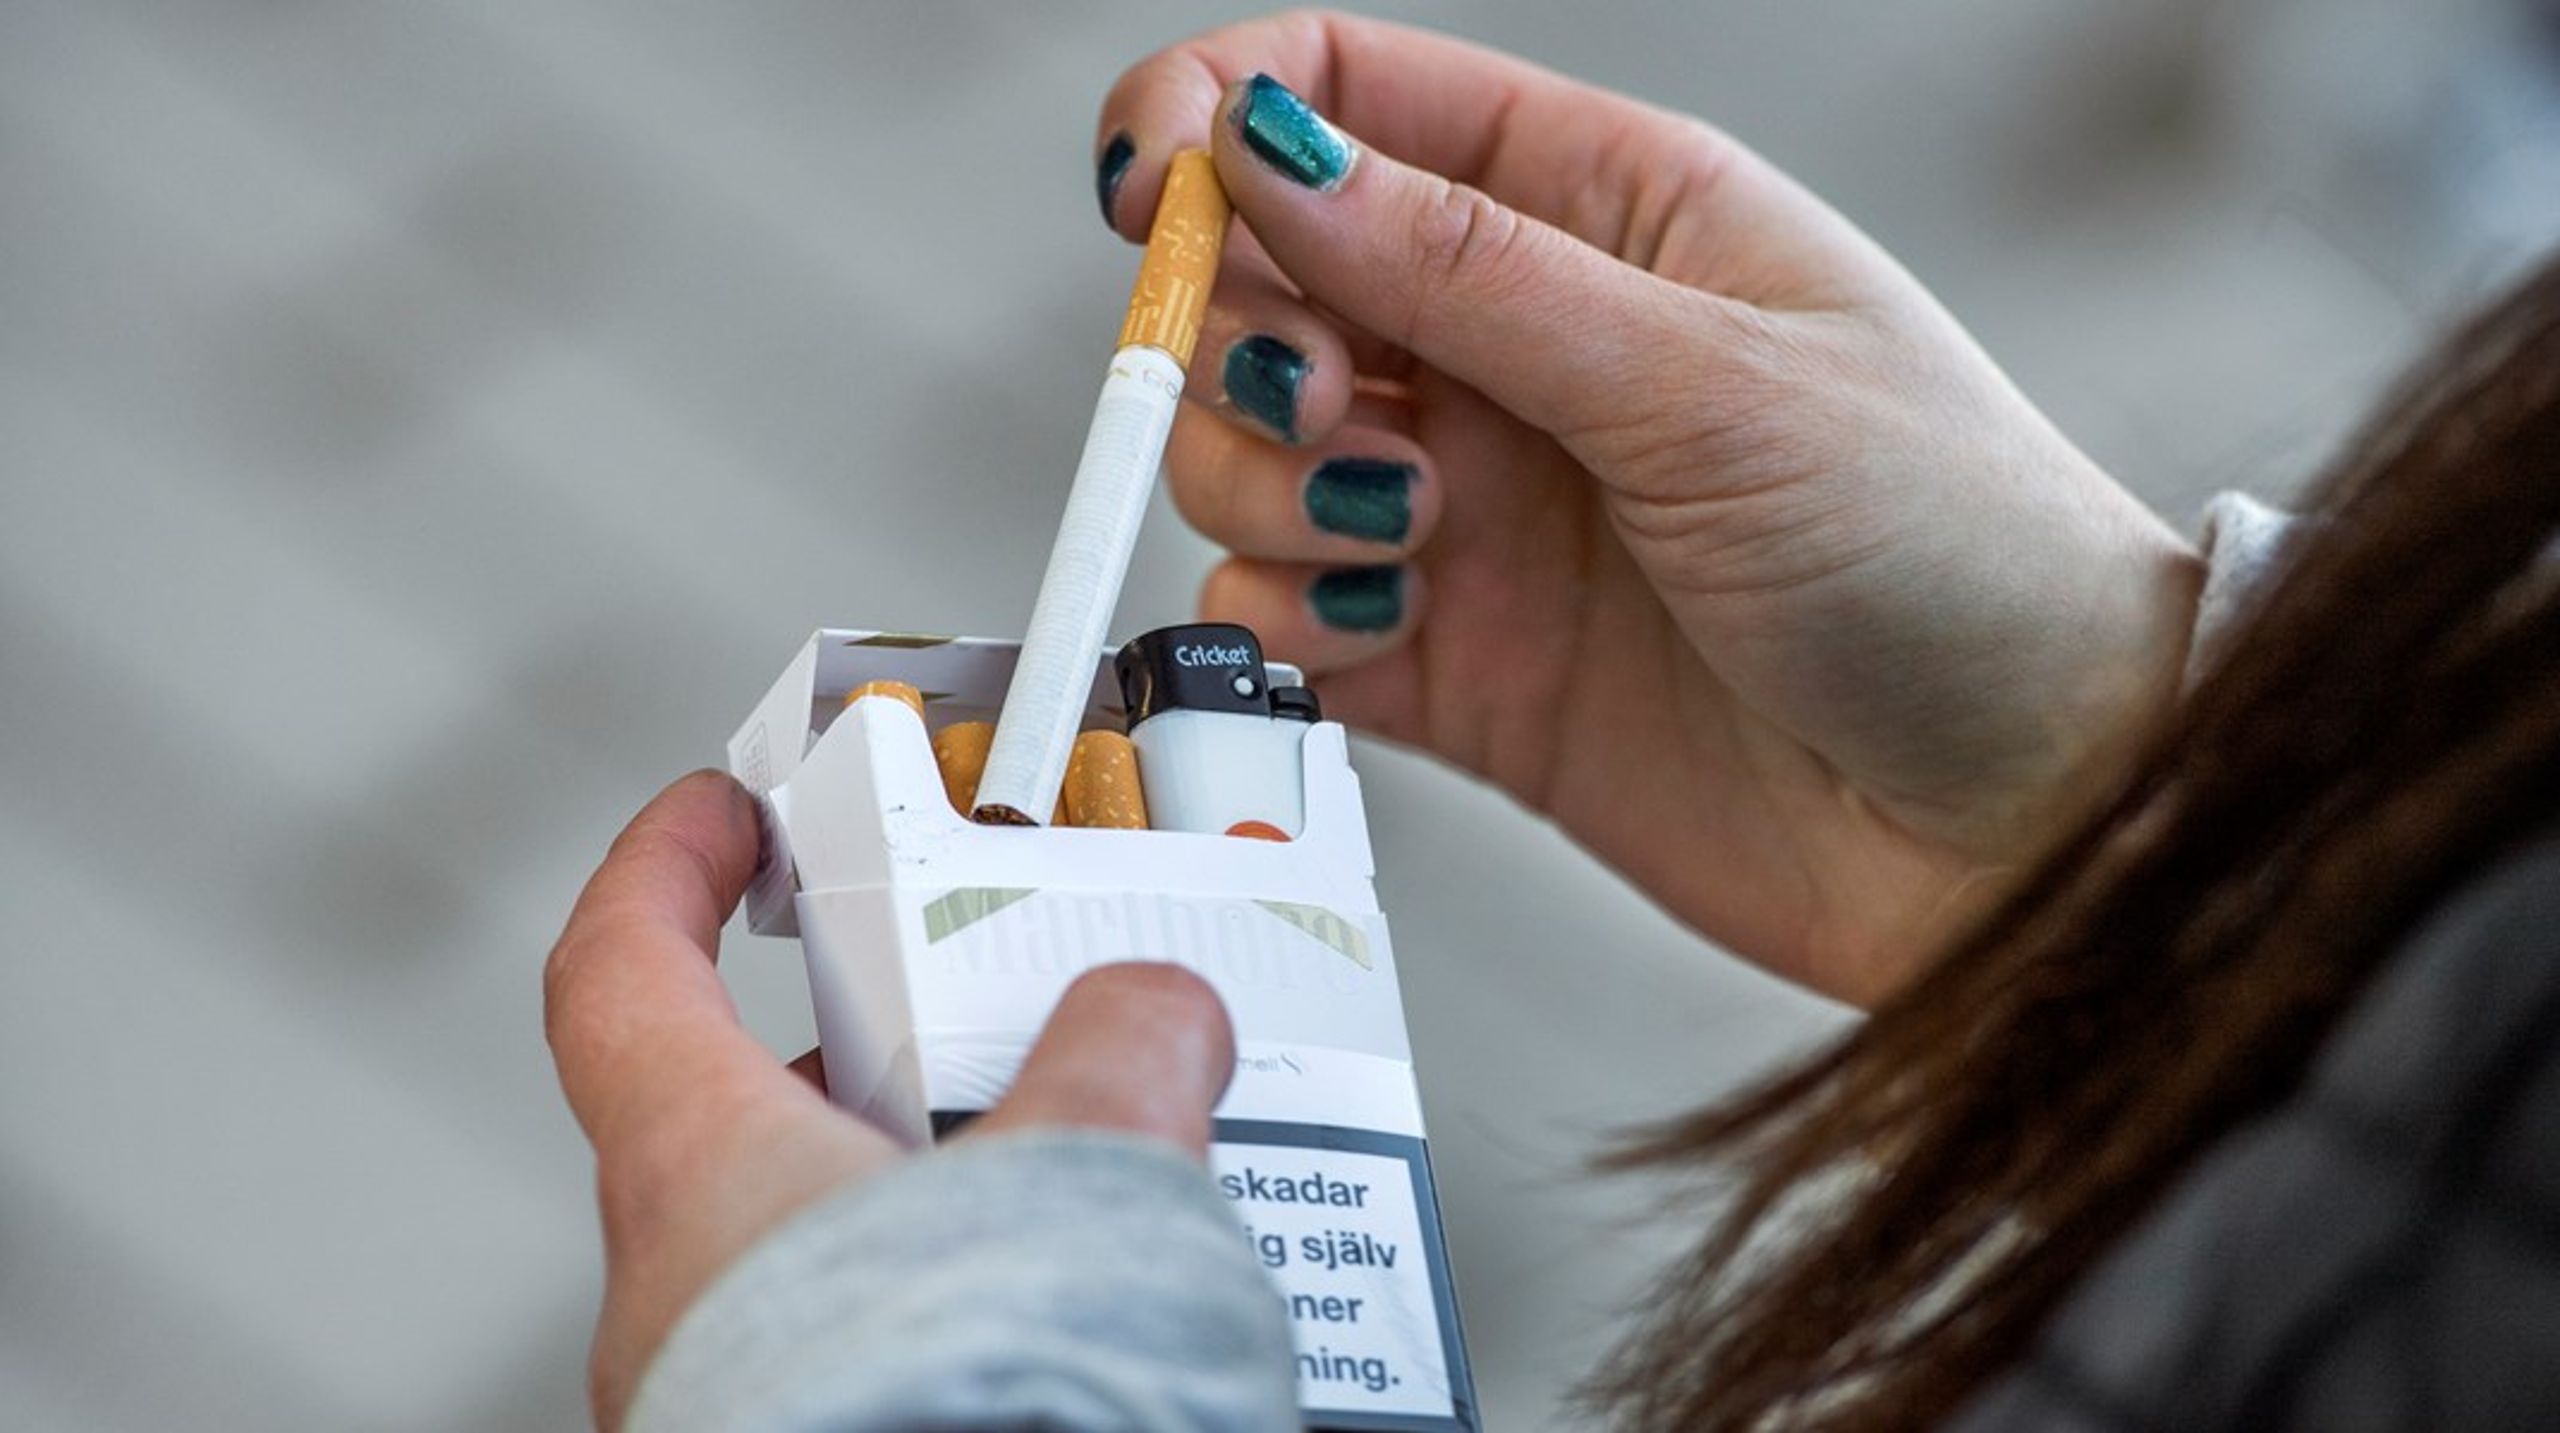 Tobaksbruket bland unga är&nbsp;högre än någonsin, skriver debattören.